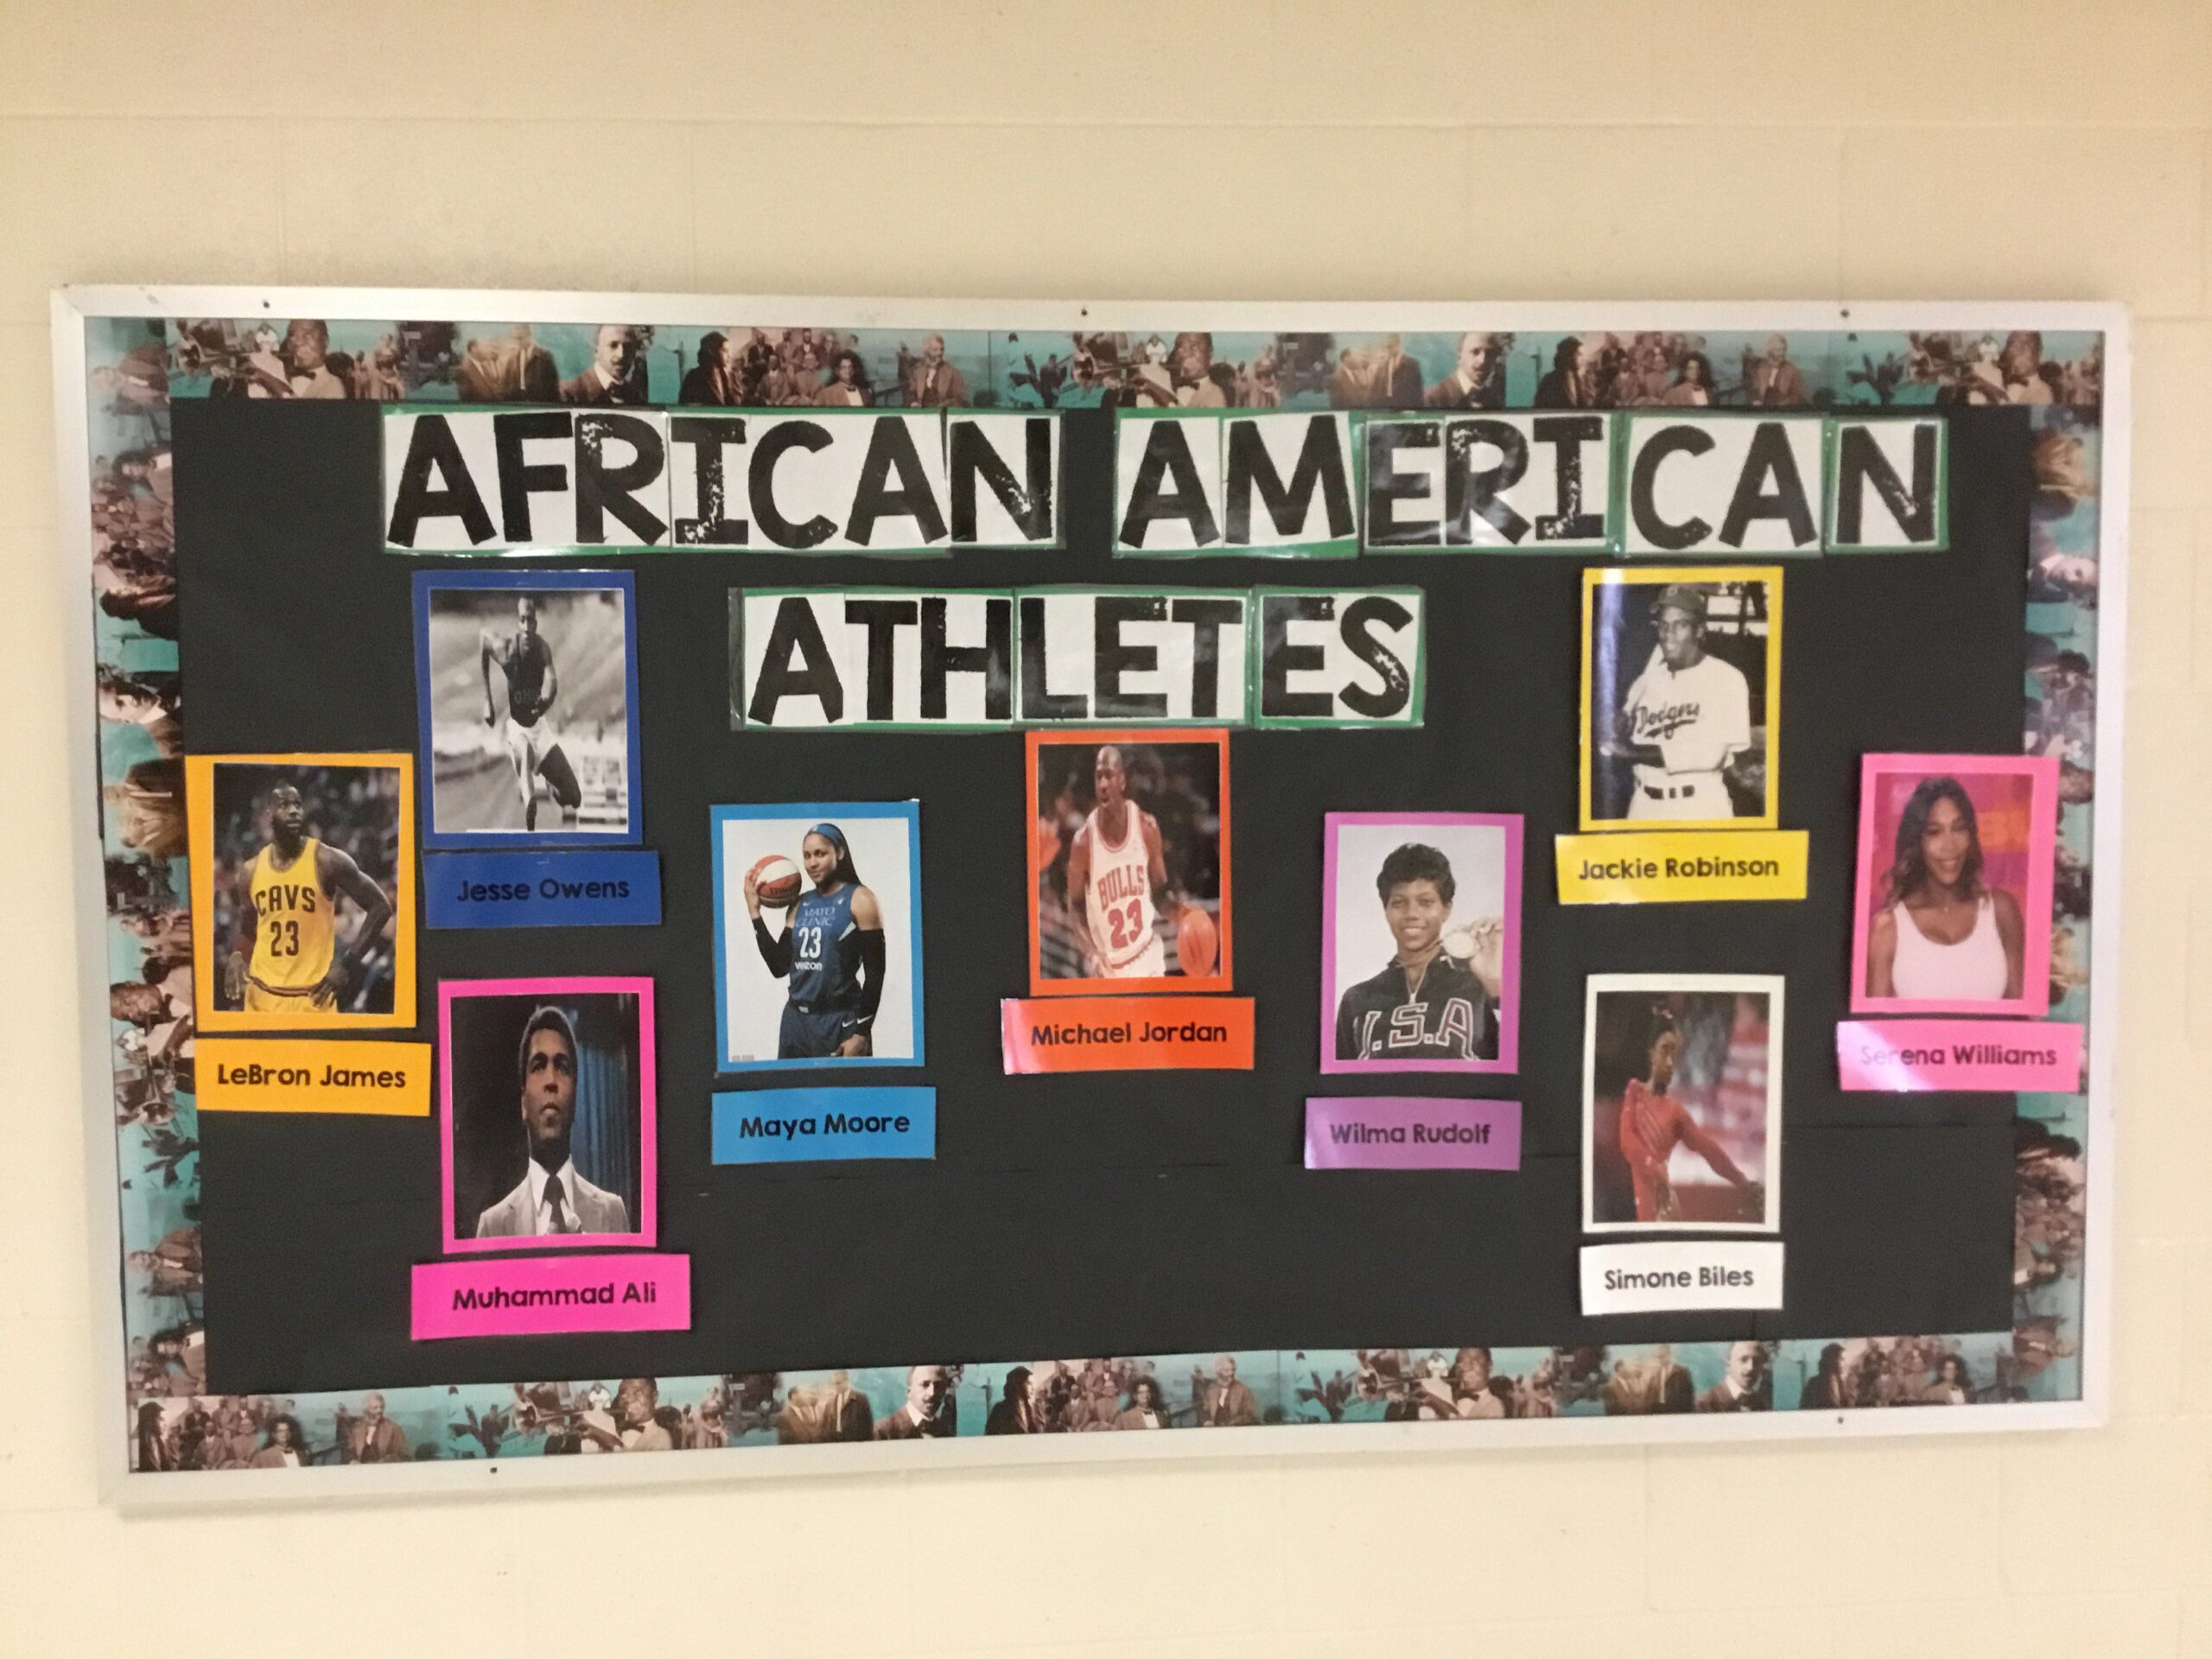 خلفية سوداء تقول الرياضيون الأمريكيون من أصل أفريقي.  يحتوي على صور وأوصاف للرياضيين السود البارزين.